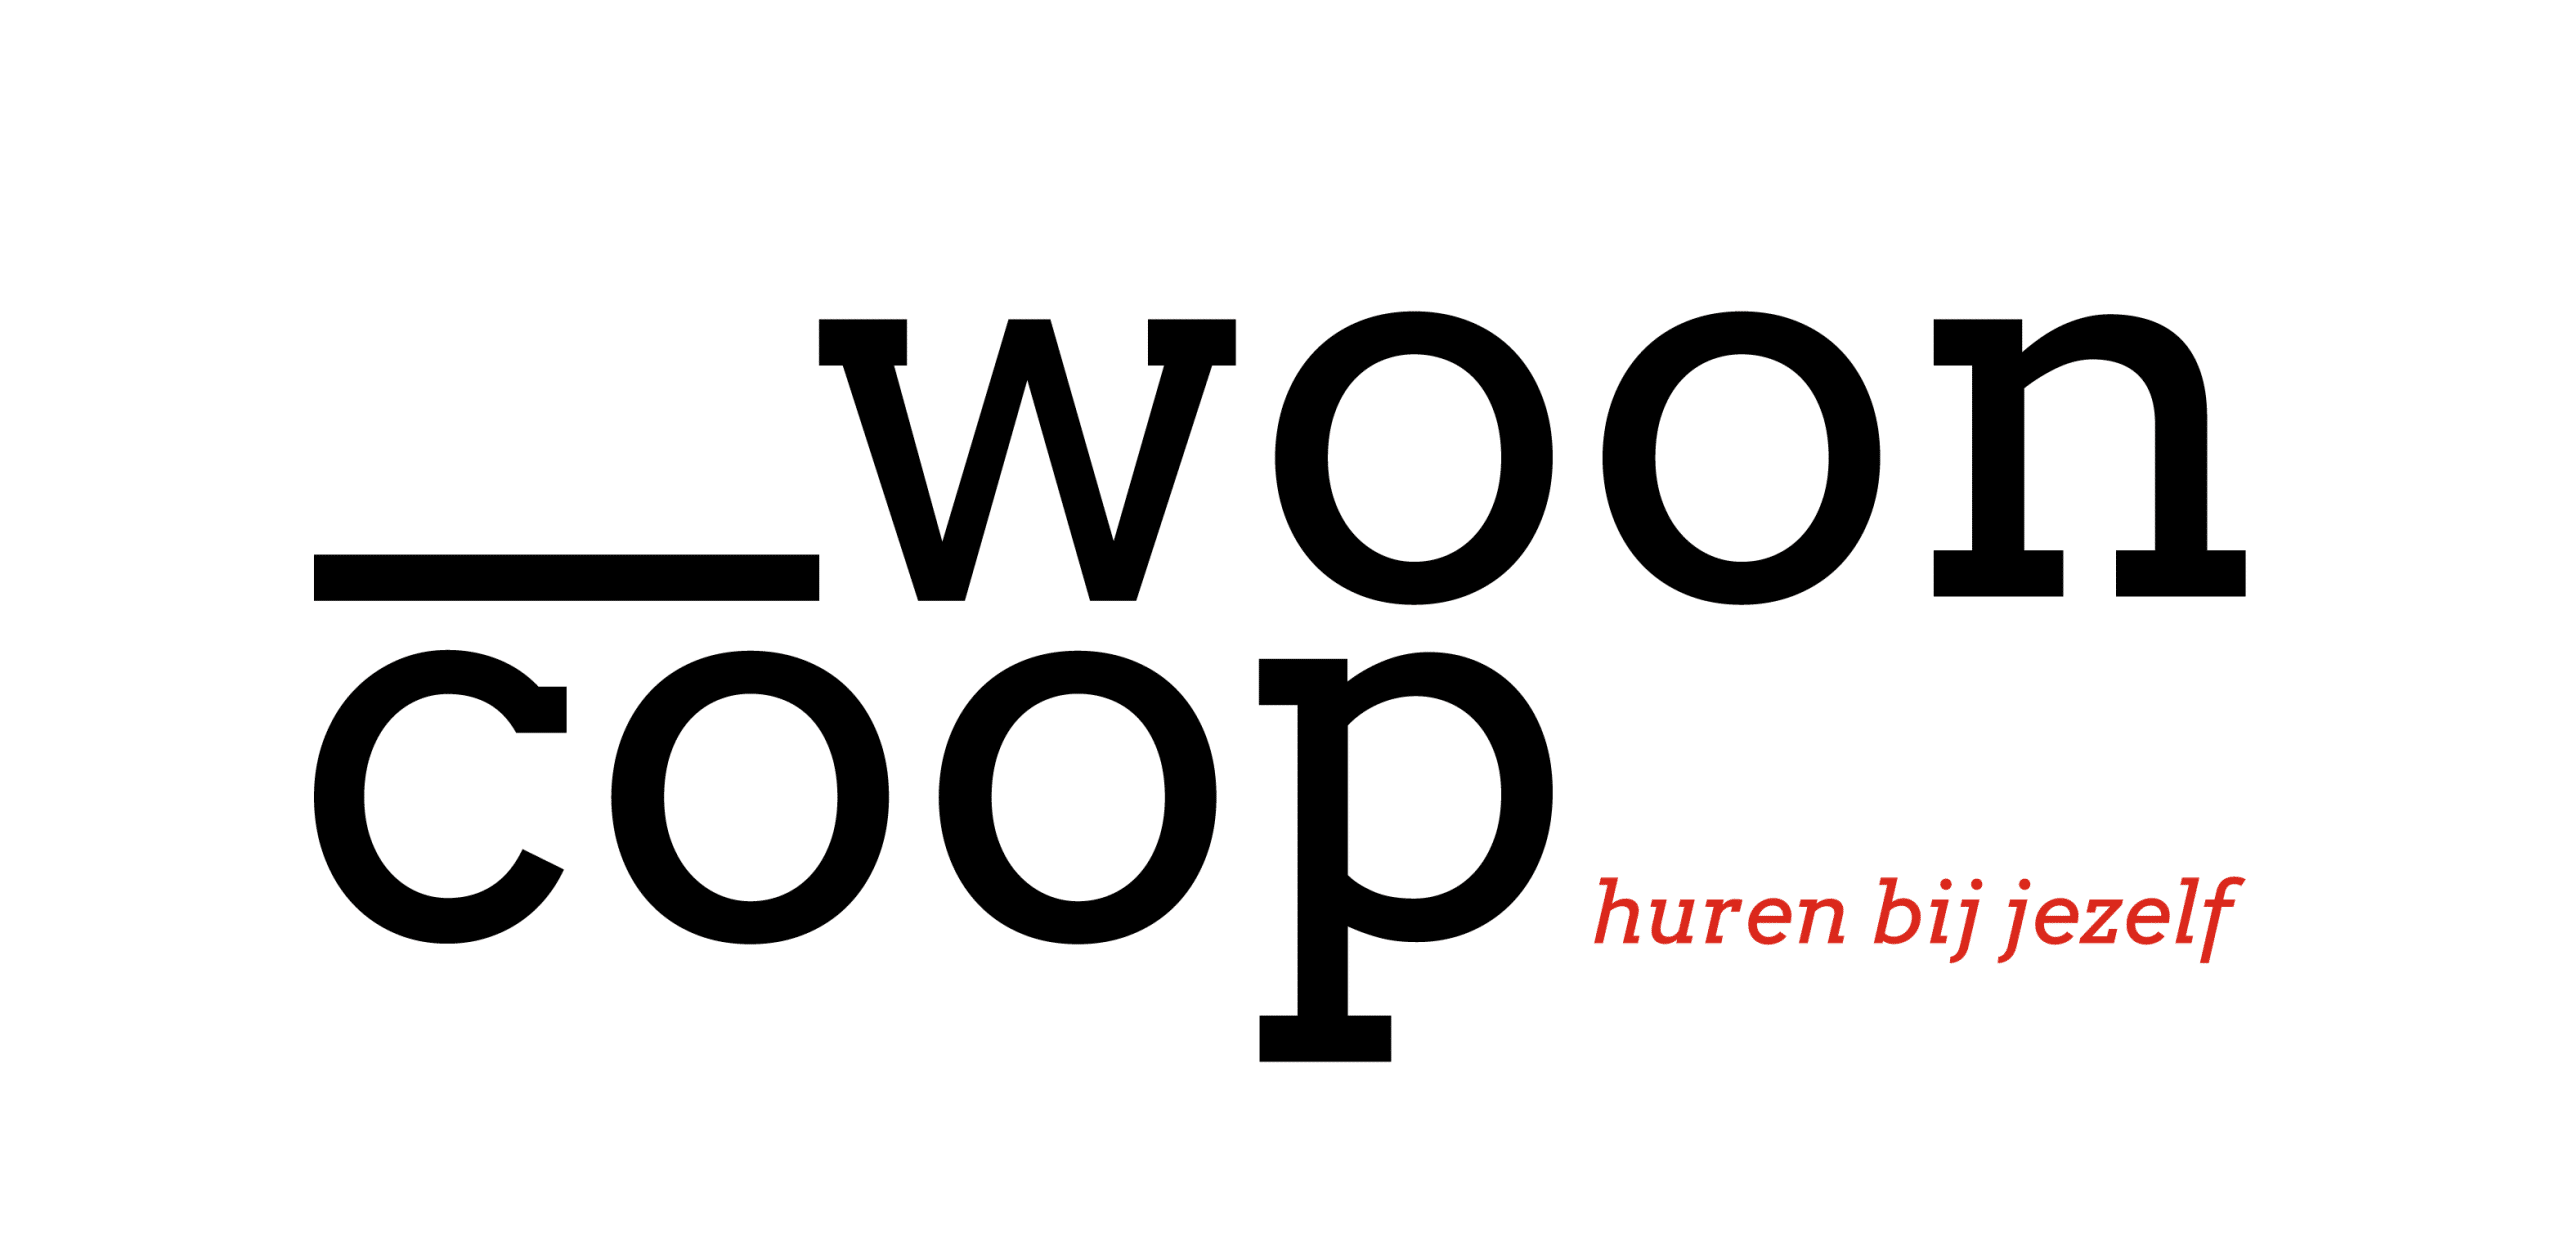 wooncoop - coöperatef wonen en investeren in Vlaanderen